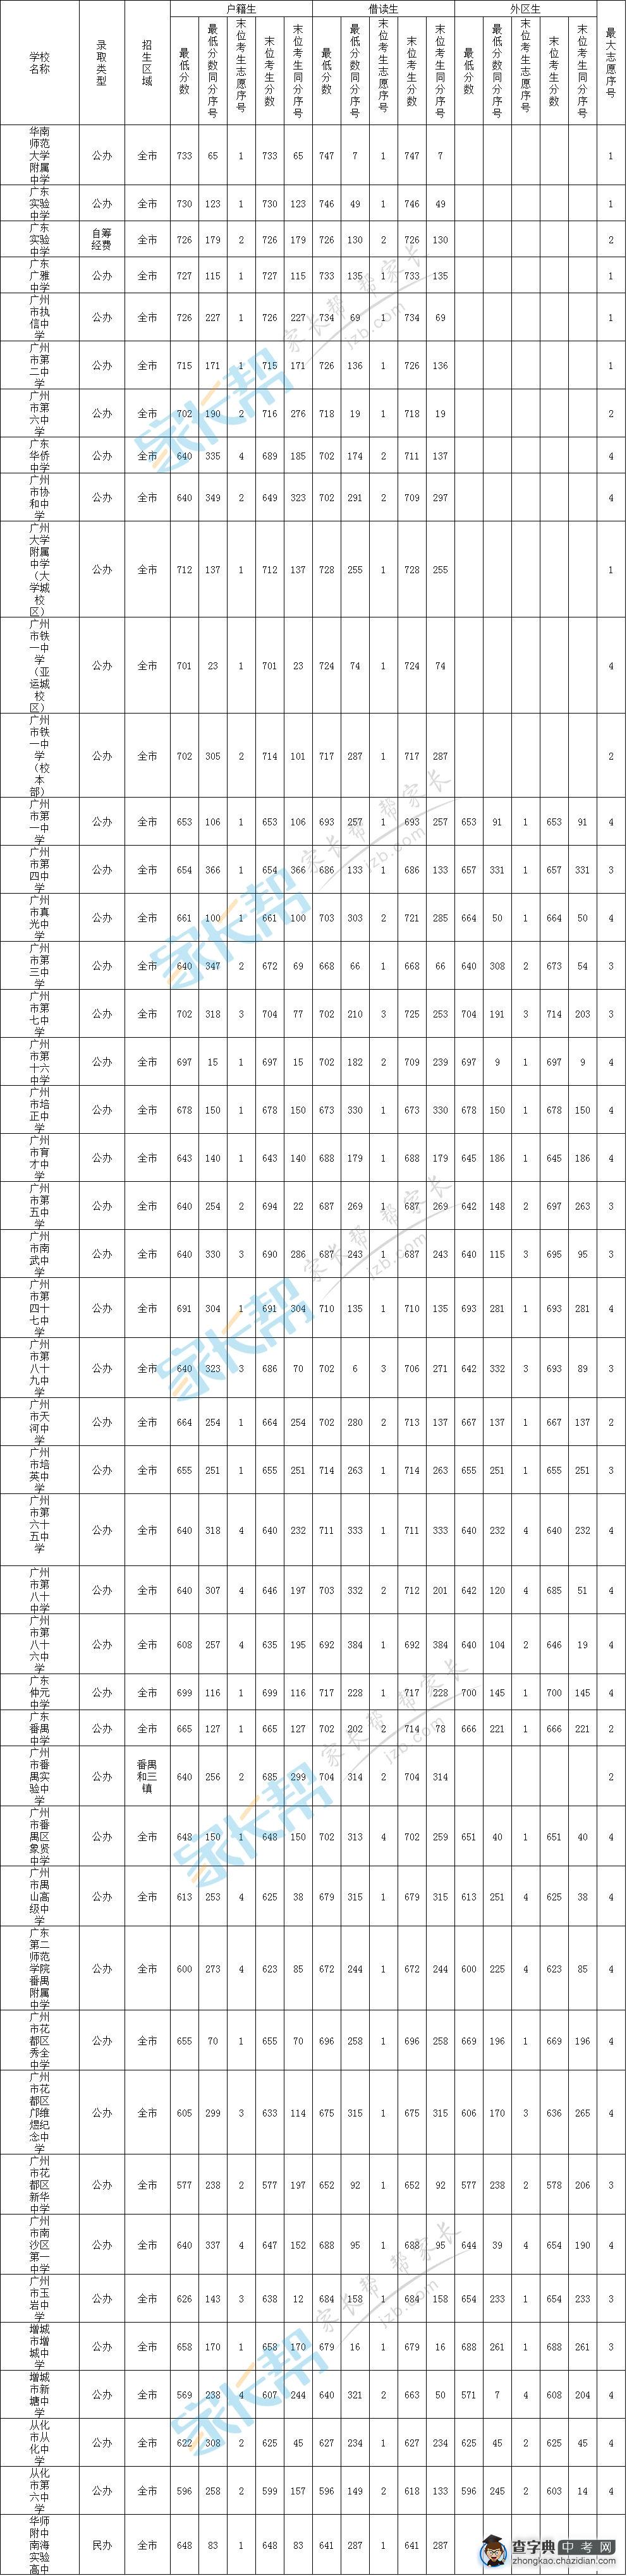 2015年广州中考各普通高中提前批录取分数线汇总1